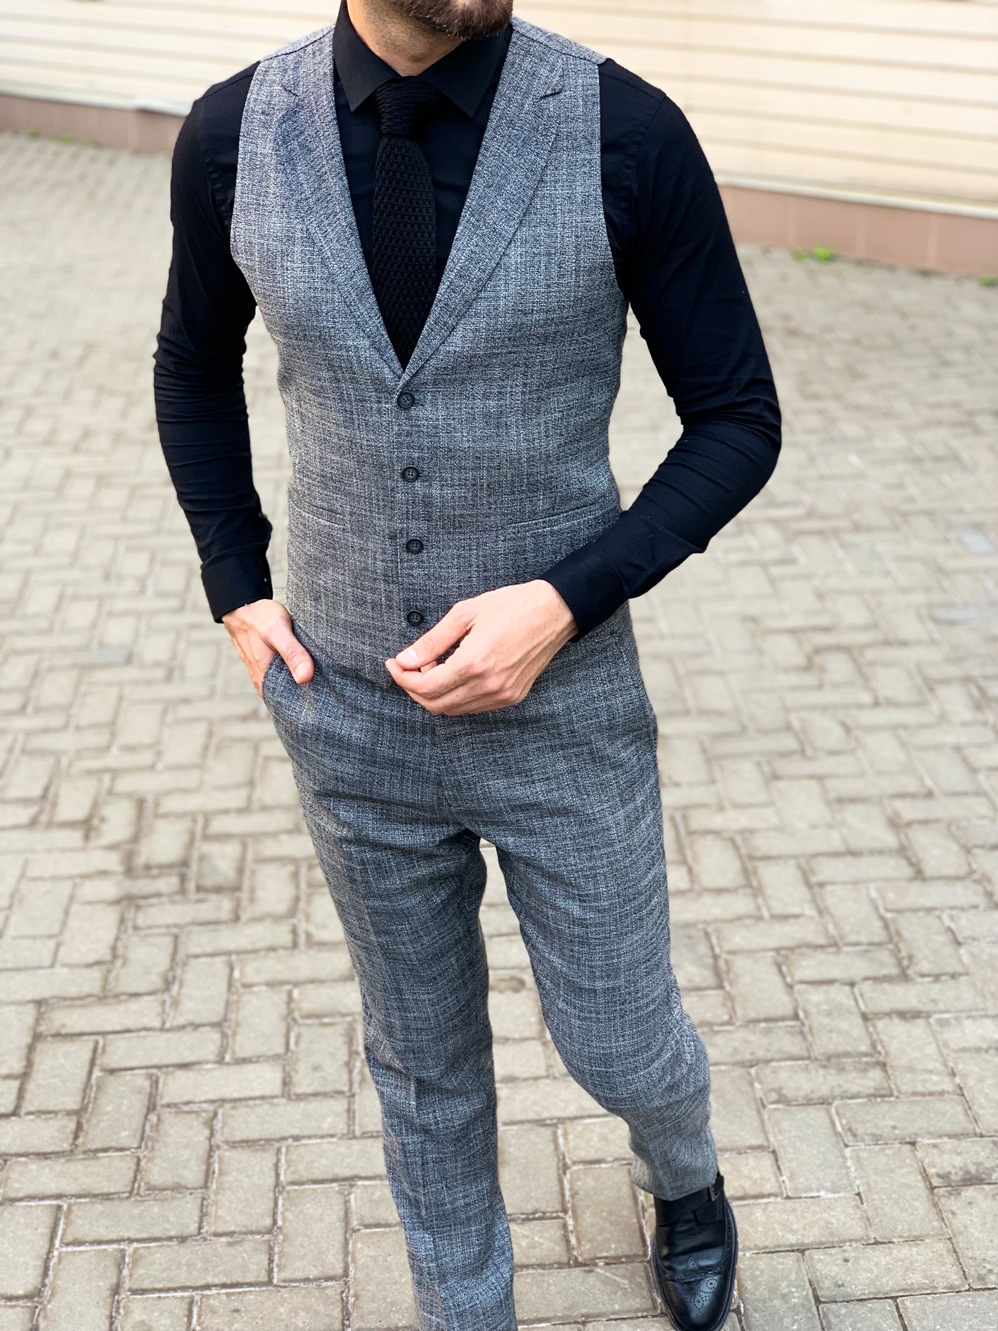 Мужской костюм брюки + жилет серого цвета. Арт.:4-1131-5 – купить вмагазине мужской одежды Smartcasuals